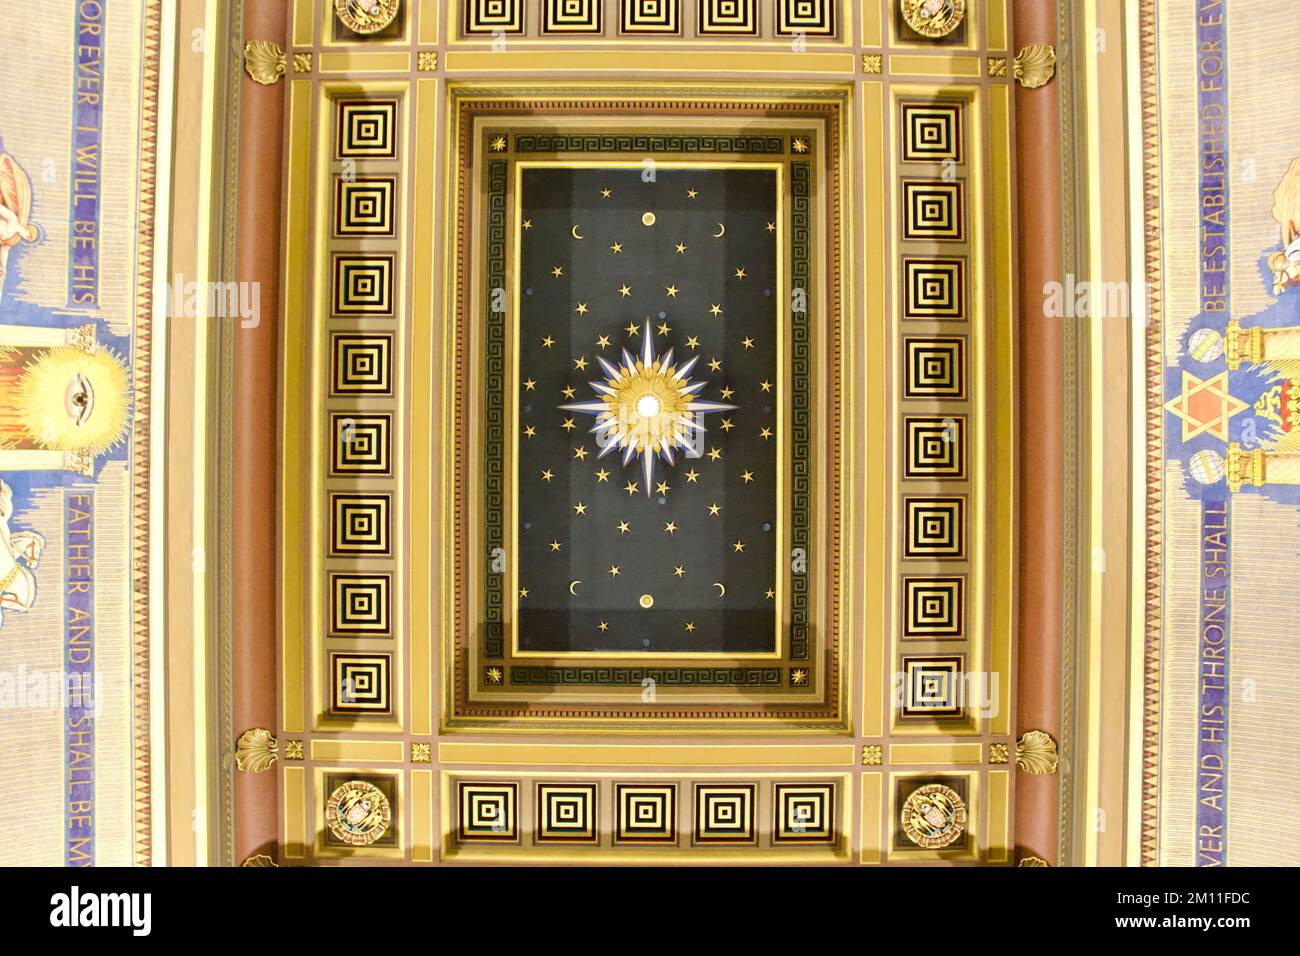 Plafond du Grand Lodge à l'intérieur du Freemasons' Hall de Londres Banque D'Images